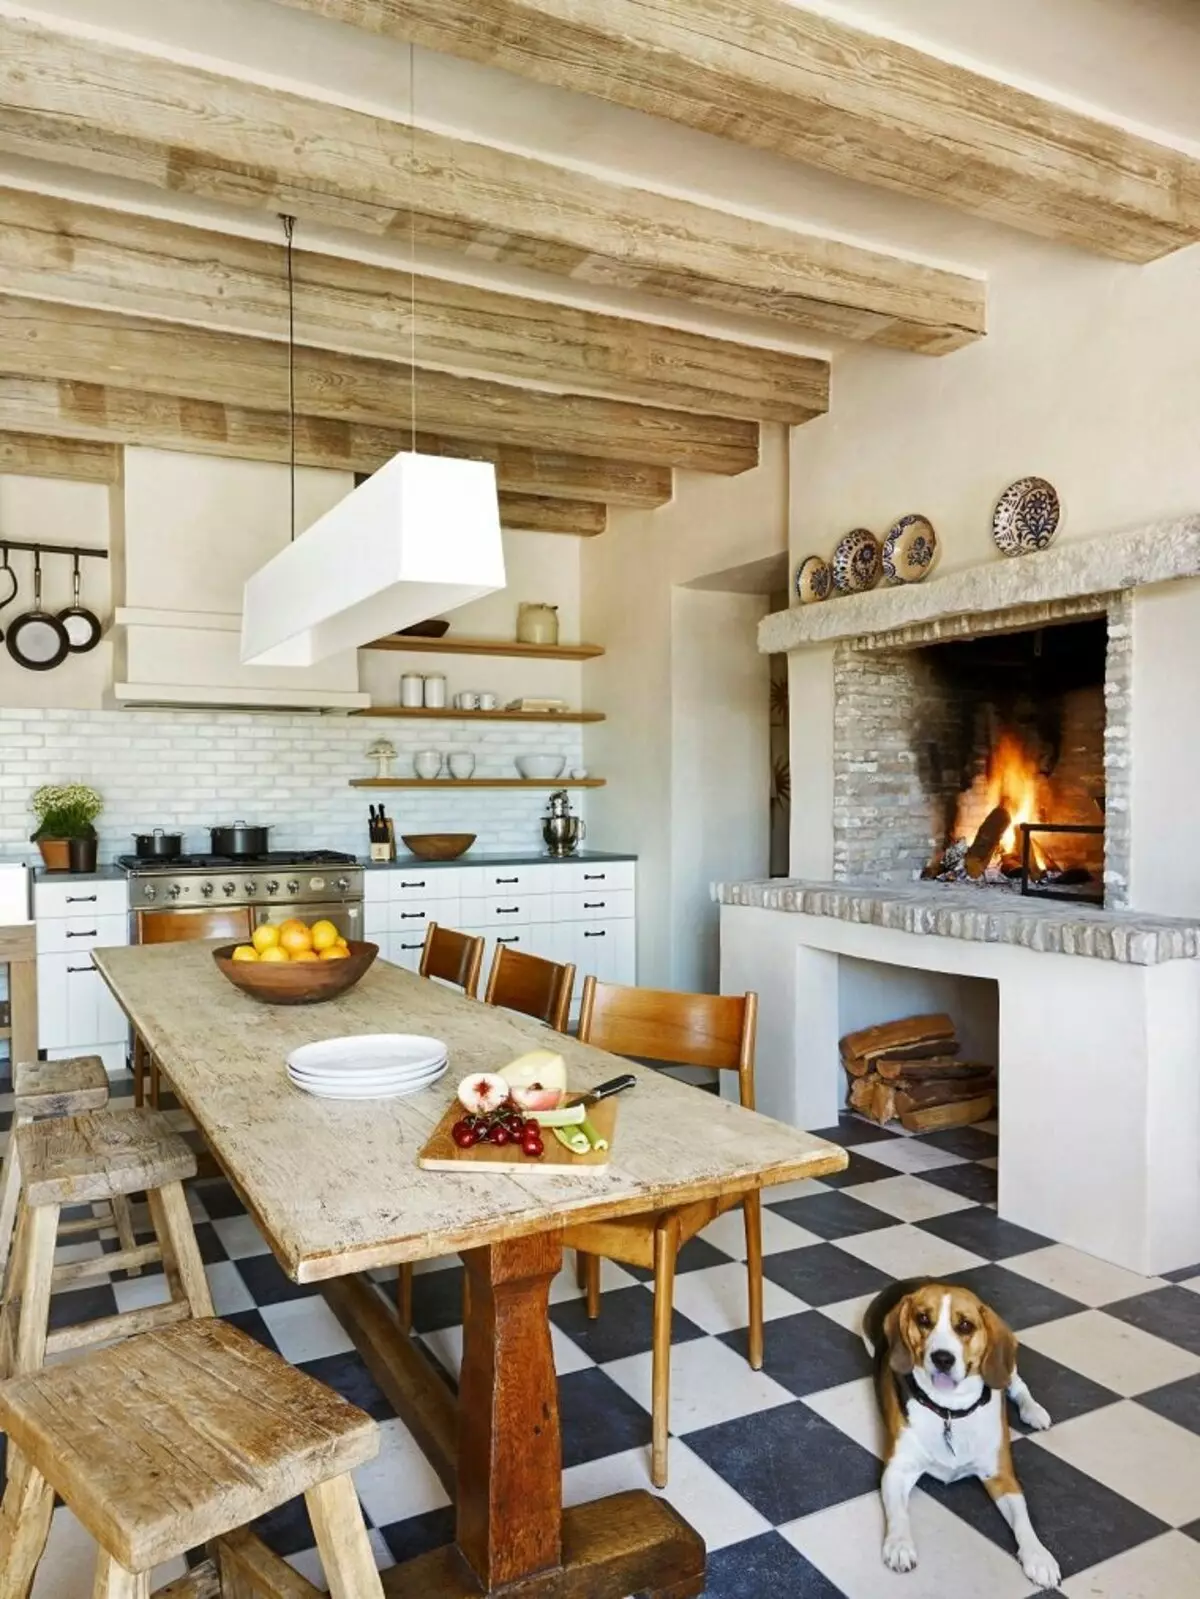 Cozinha em uma casa rústica (68 fotos): Idéias de design de interiores em uma antiga casa rural com um fogão. Arranjo eco-promissora e decoração da cozinha na aldeia 9457_25